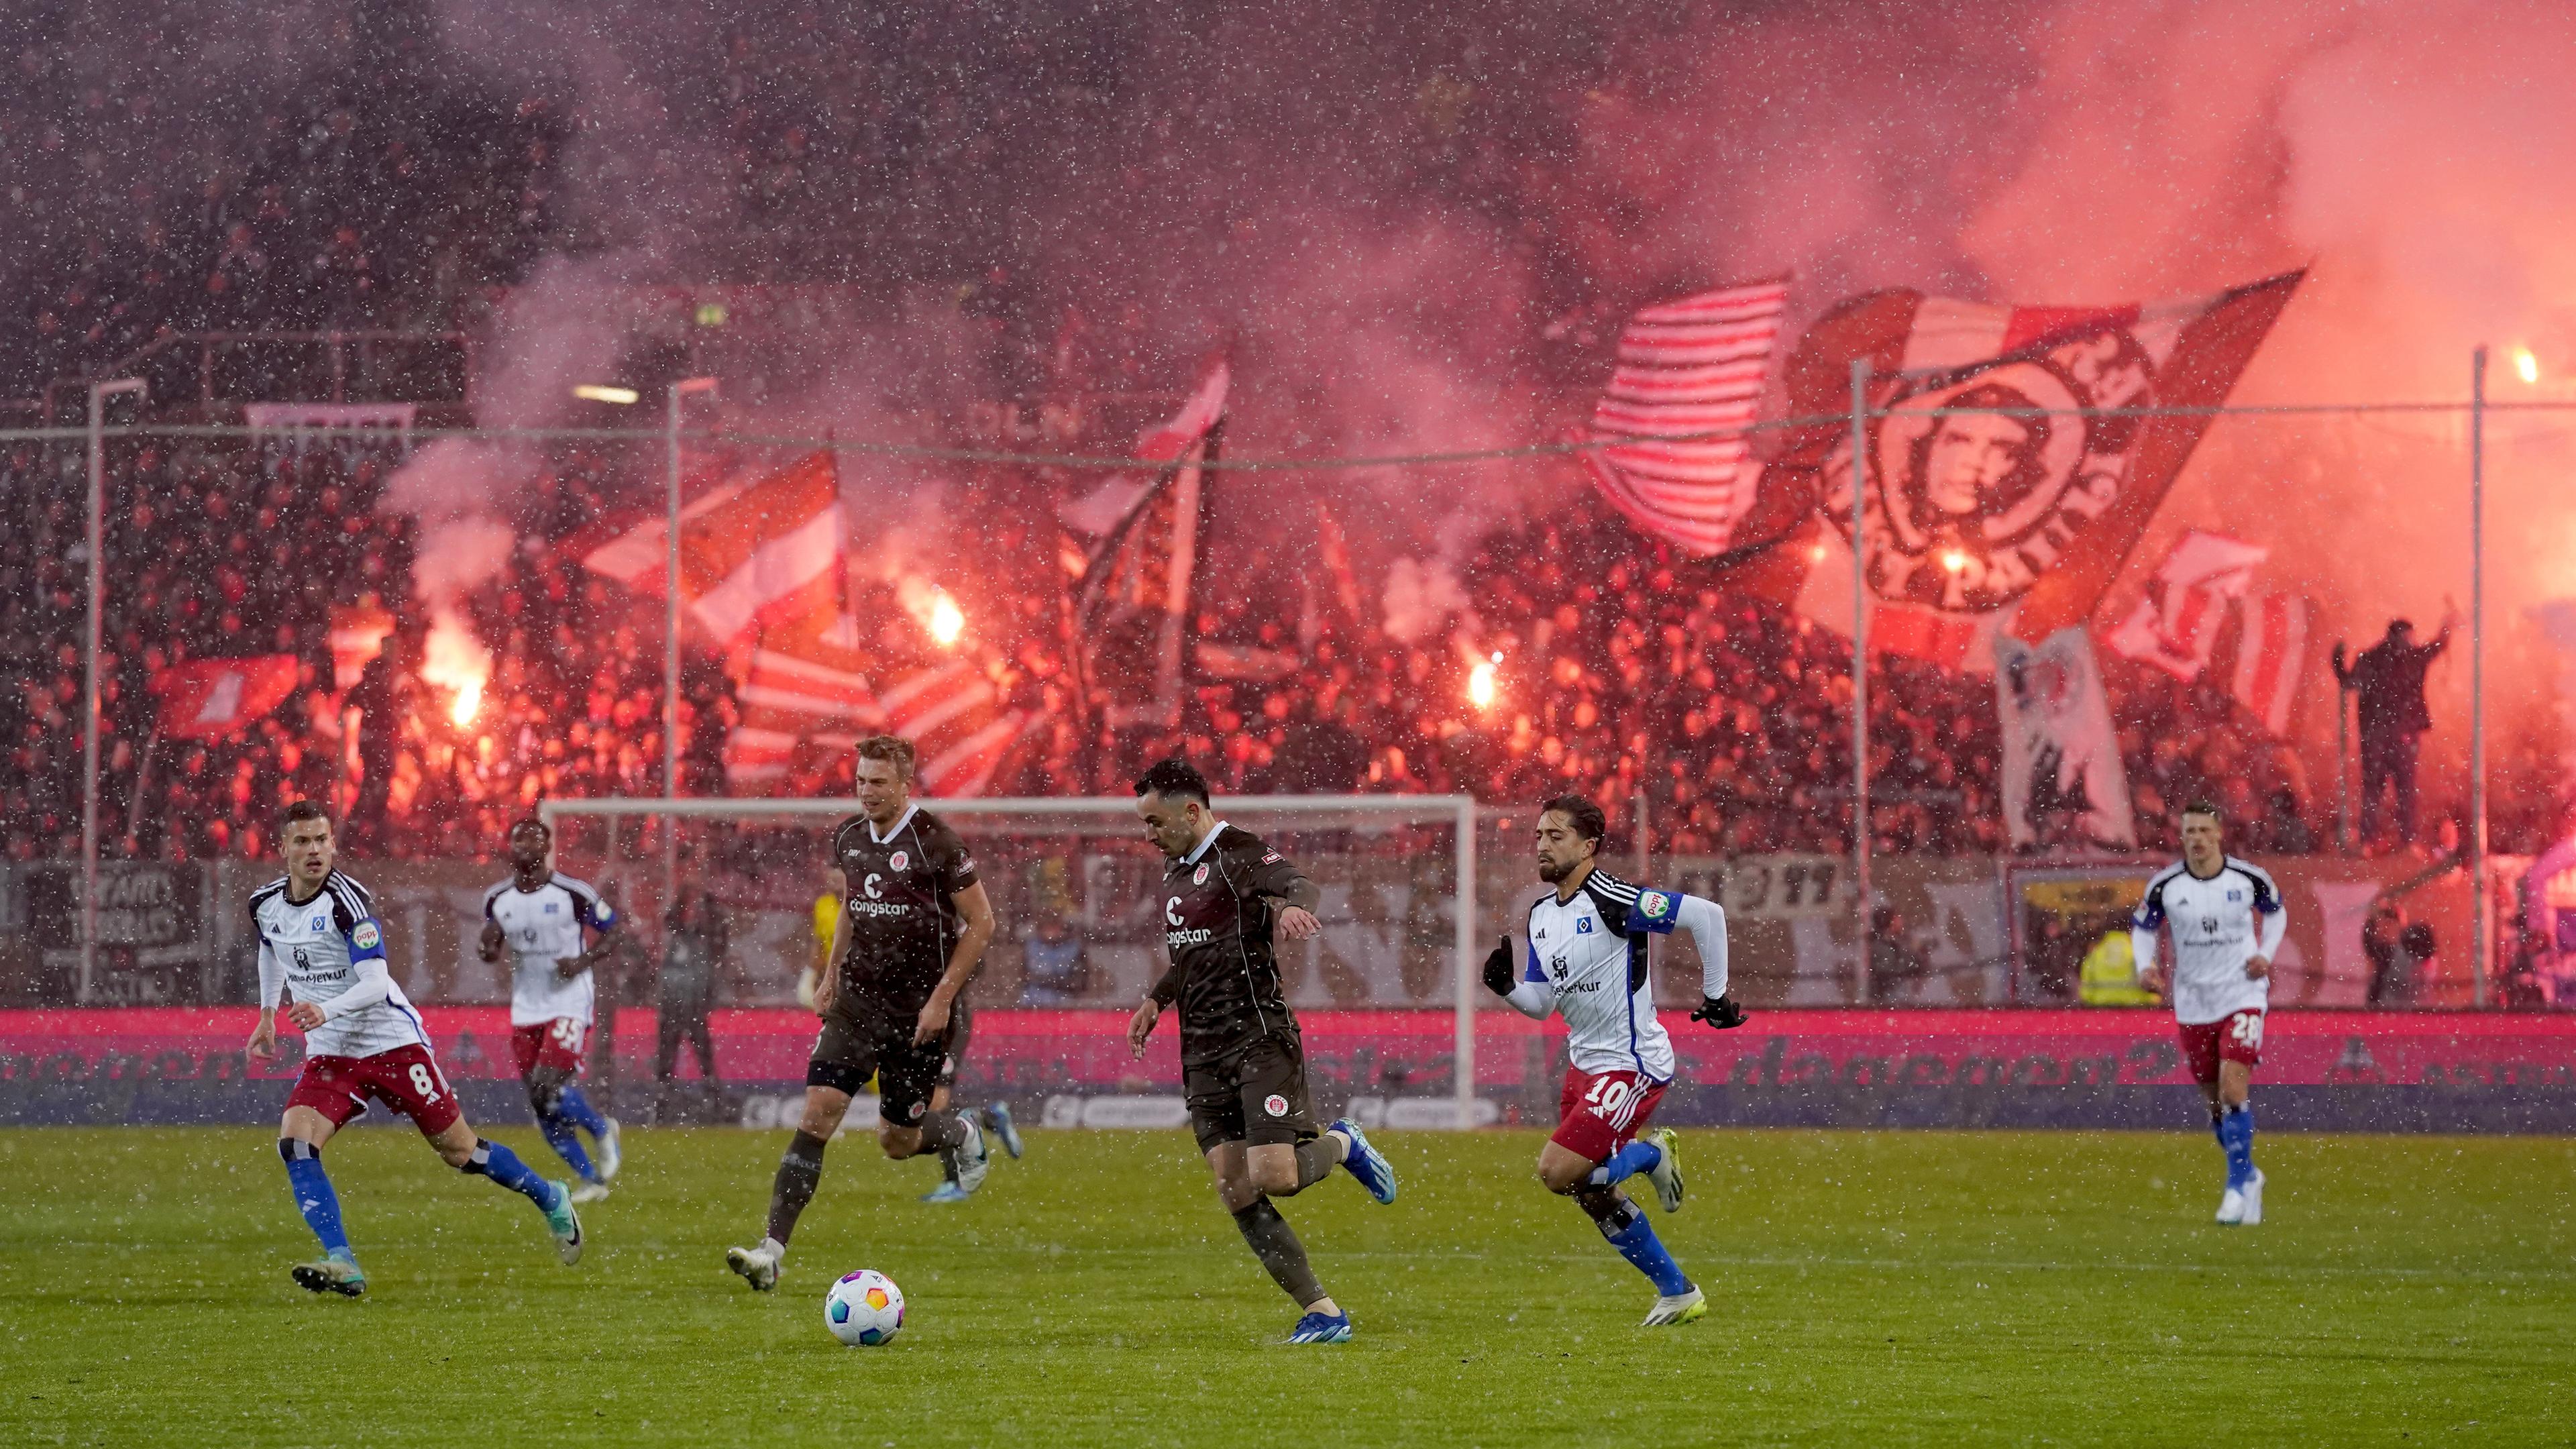 Im Vordergrund spielen mehrere Fußballspieler in weißen oder schwarzen Trikots auf einem Fußballplatz. Im Hintergrund stehen Fußballfans mit wehenden Fahnen und brennenden Böllern auf der Tribüne, die dadurch rötlich beleuchtet wird.